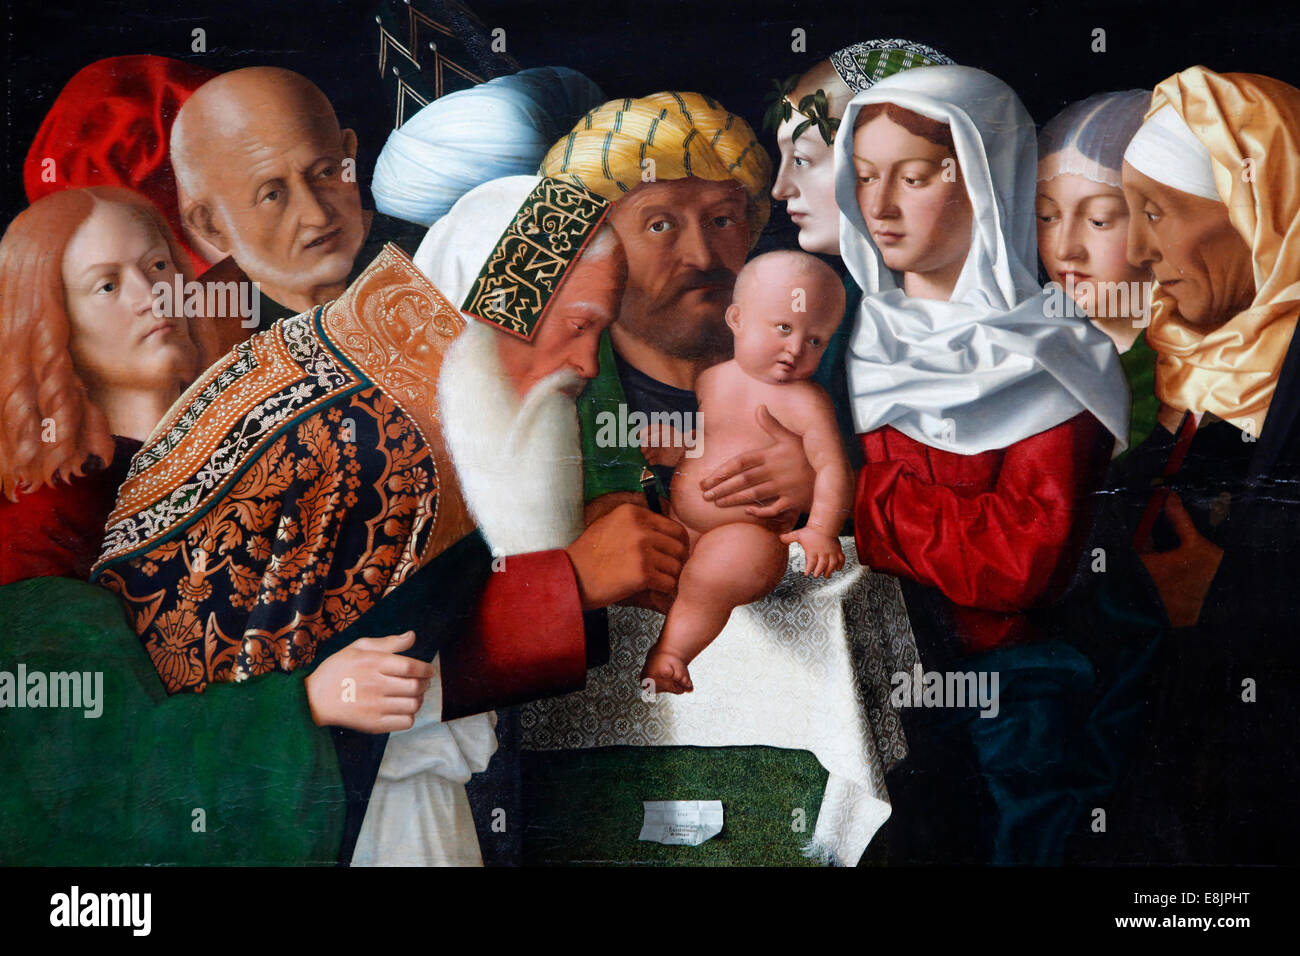 The Circumcision by Bartolomeo Veneto (1506). Stock Photo